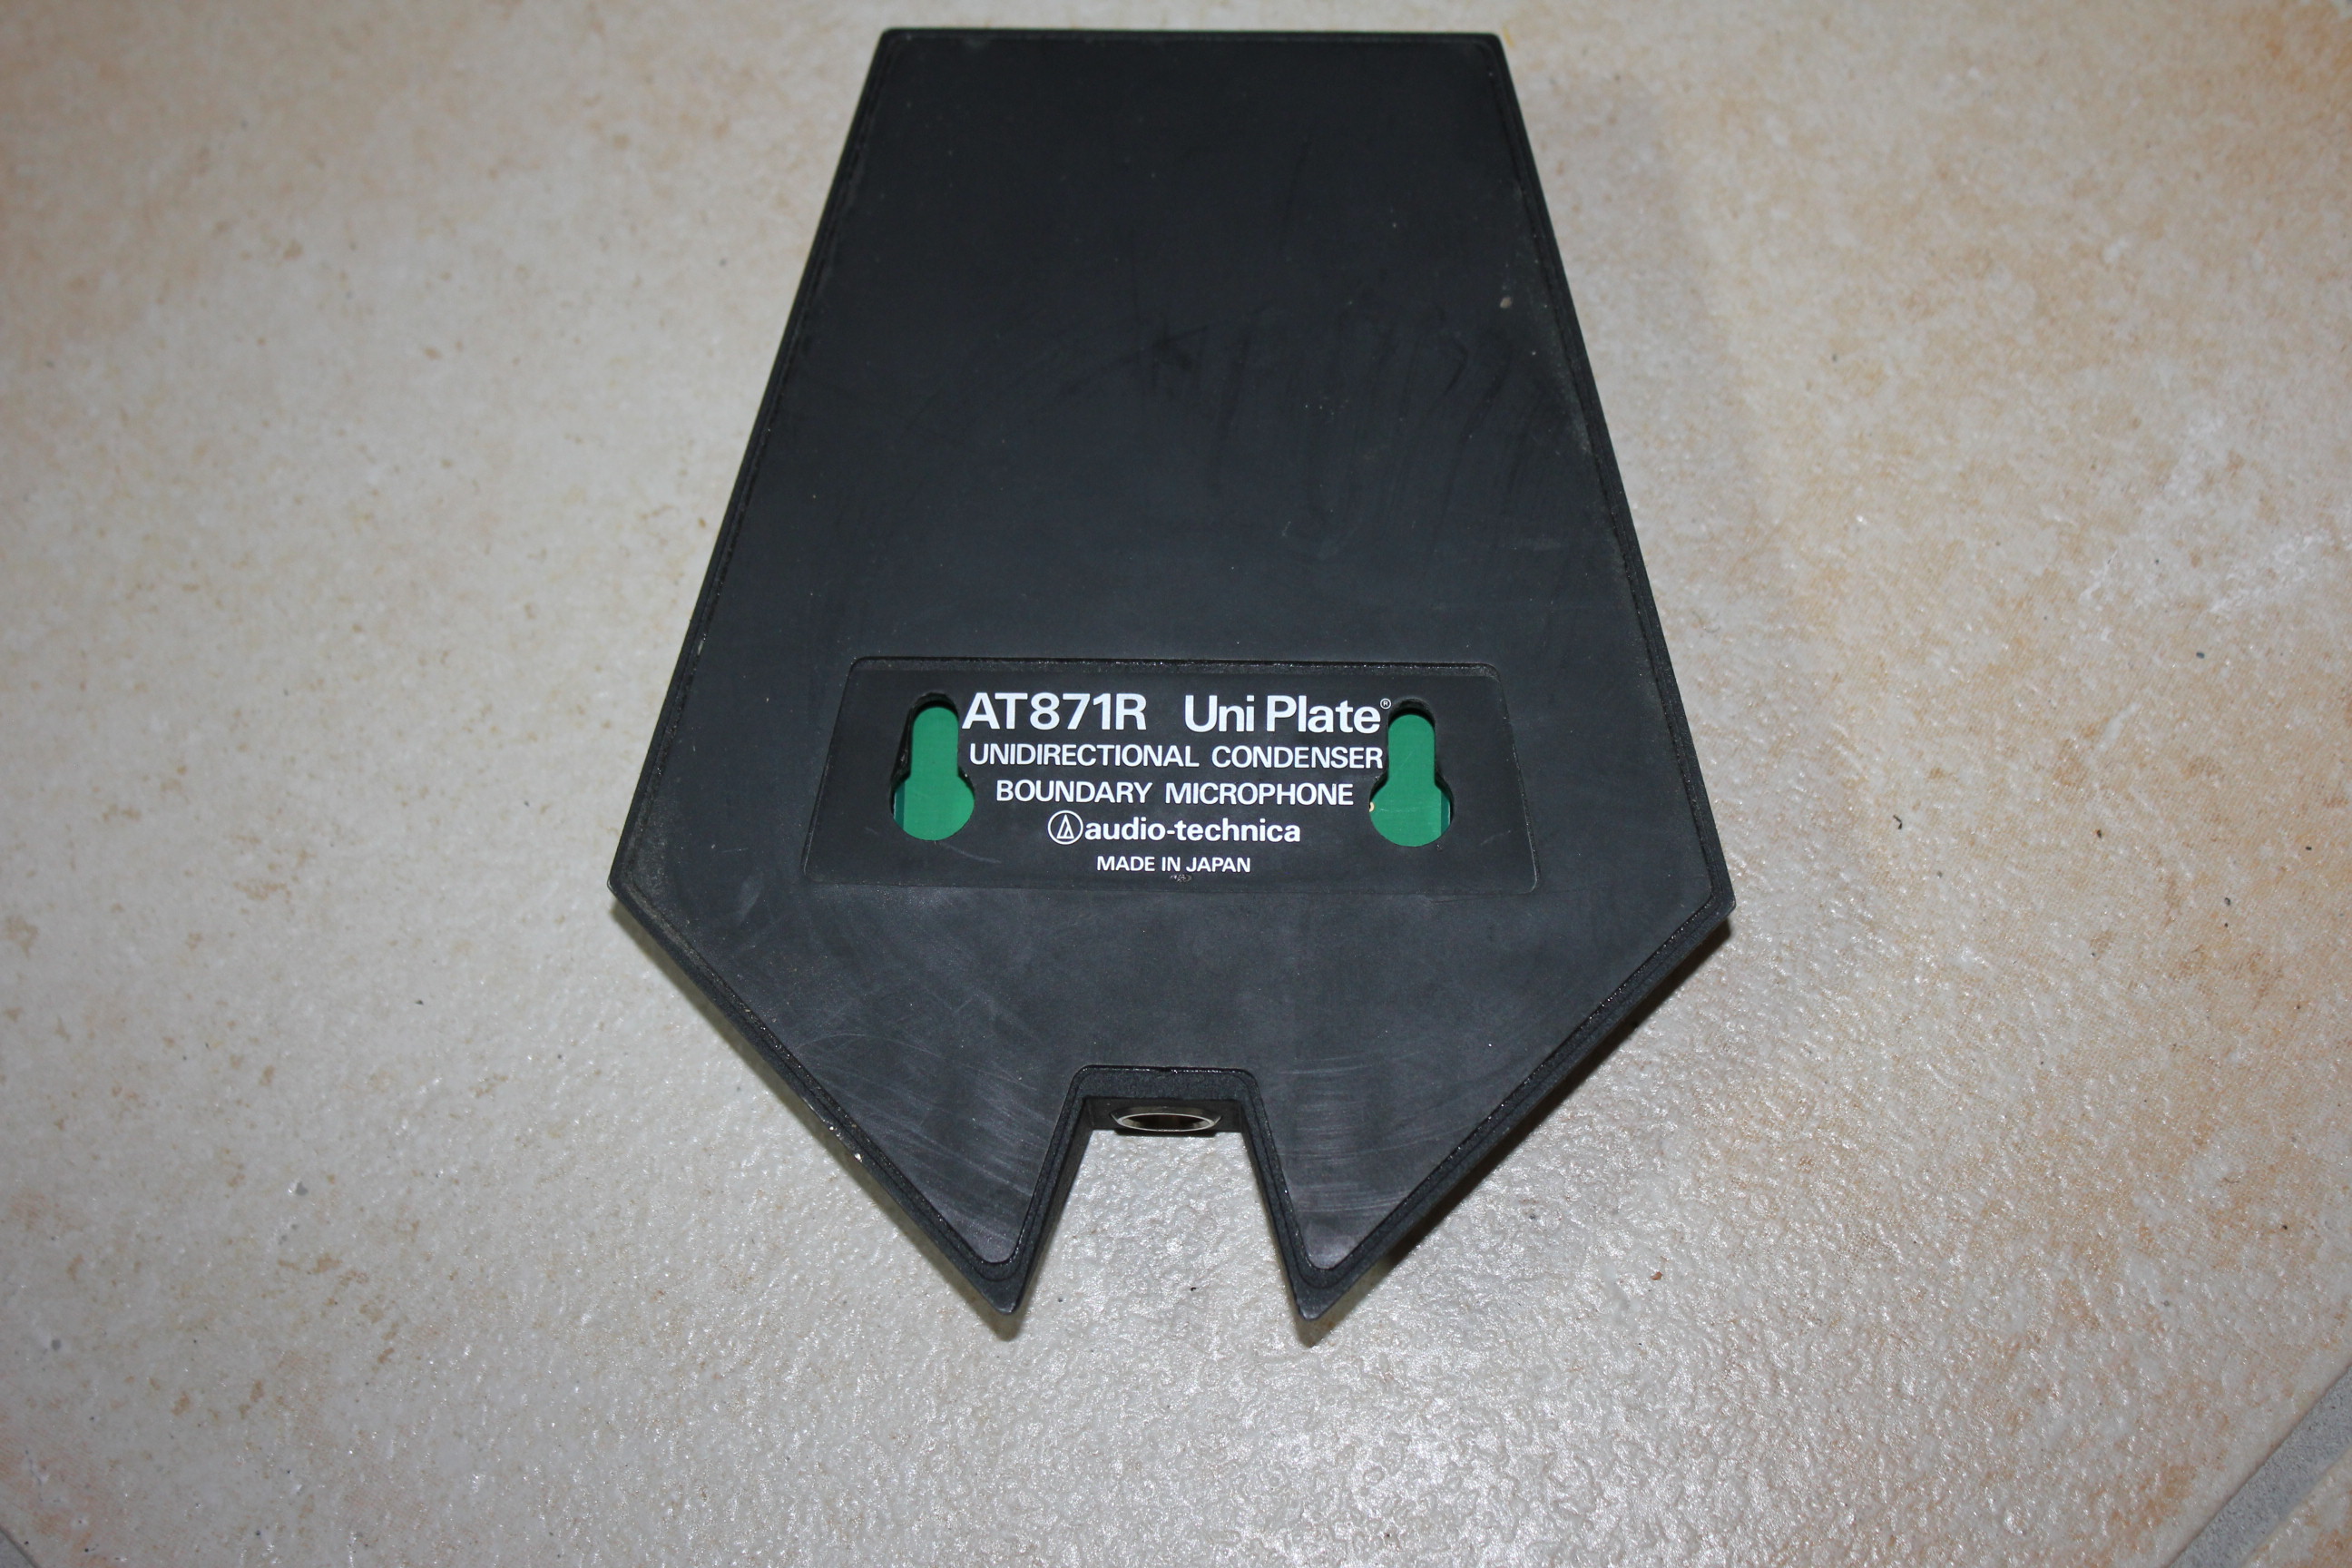 Audio-Technica AT871R uni Plate